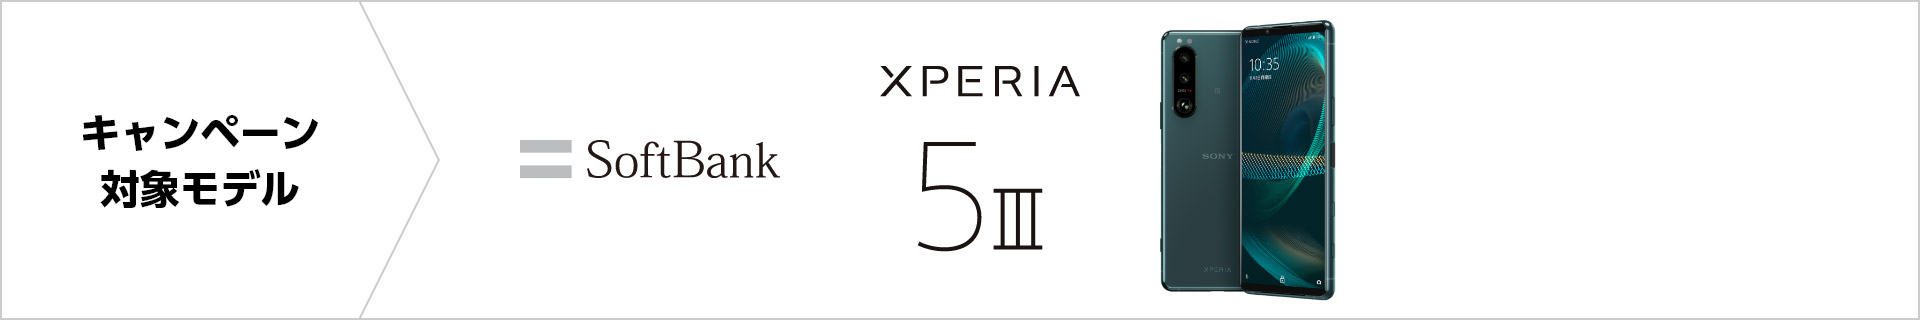 キャンペーン対象モデル SoftBank Xperia 5 III